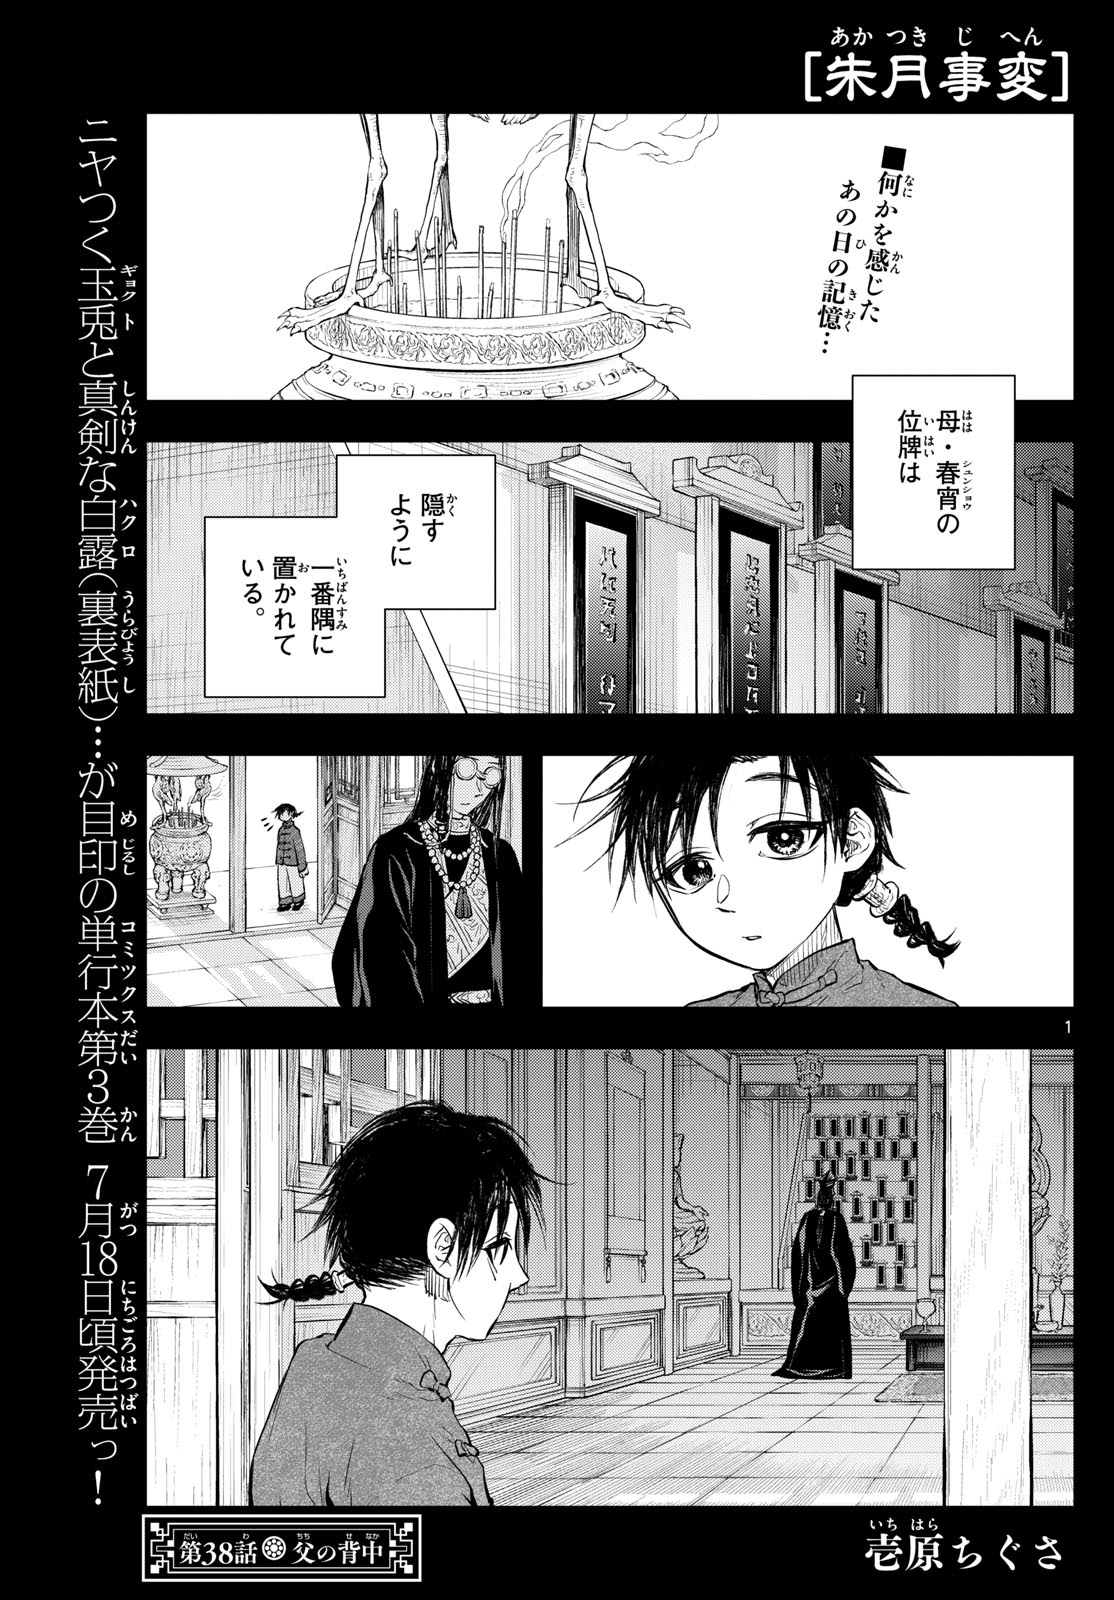 Akatsuki Jihen - Chapter 38 - Page 1